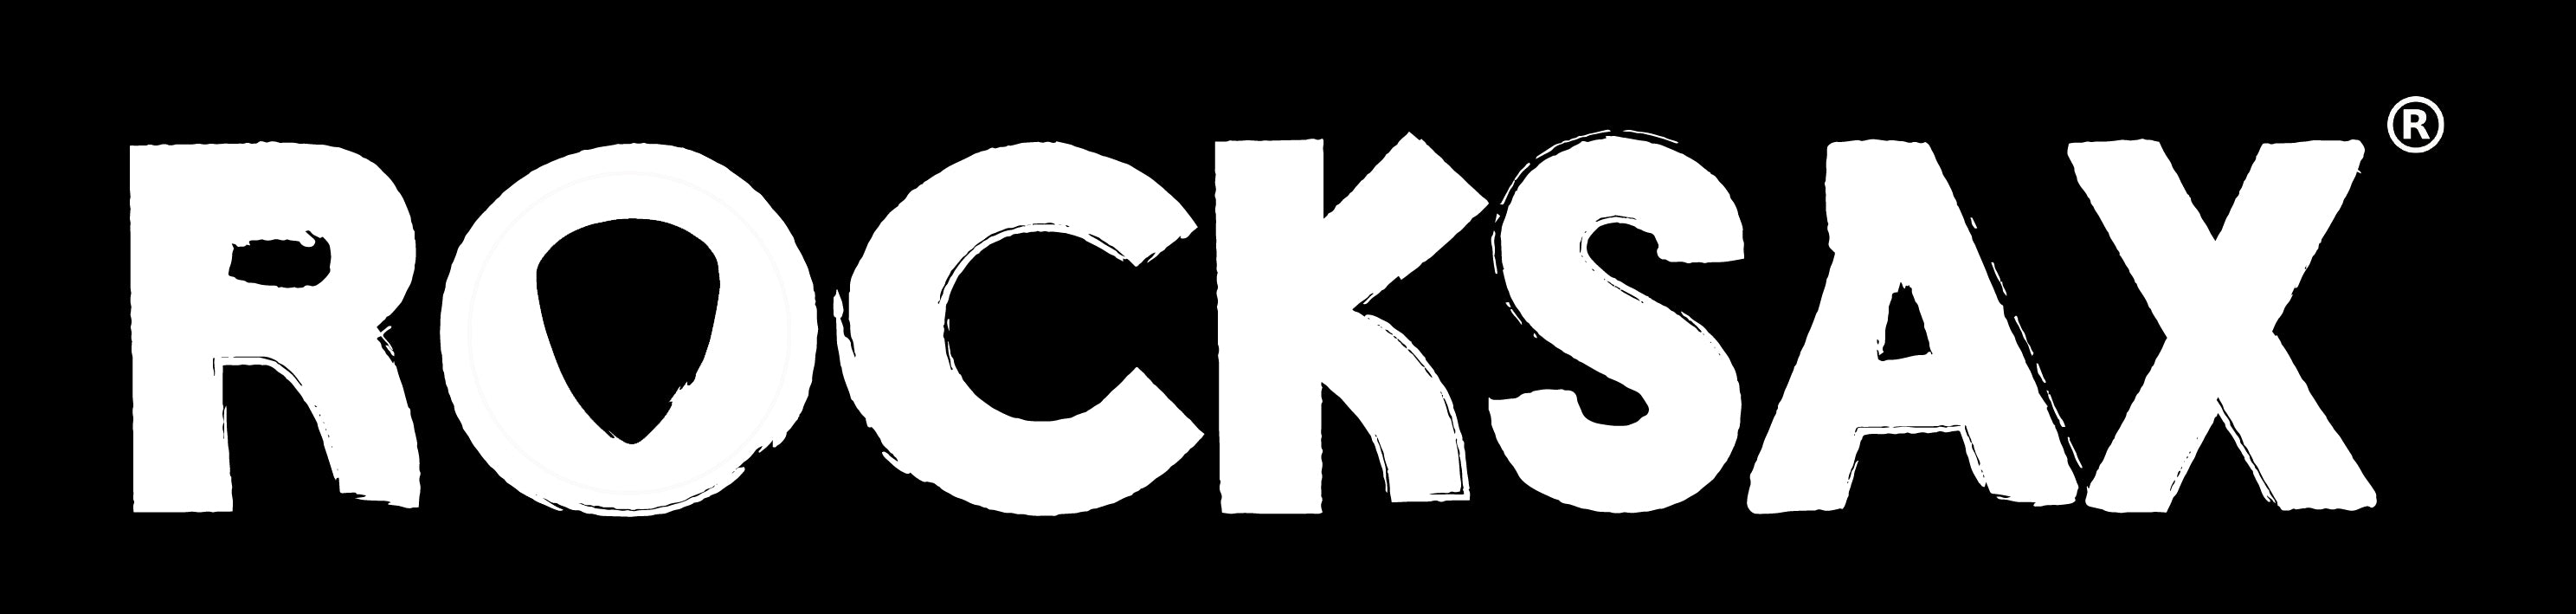 Rocksax - Official Music Merchandise